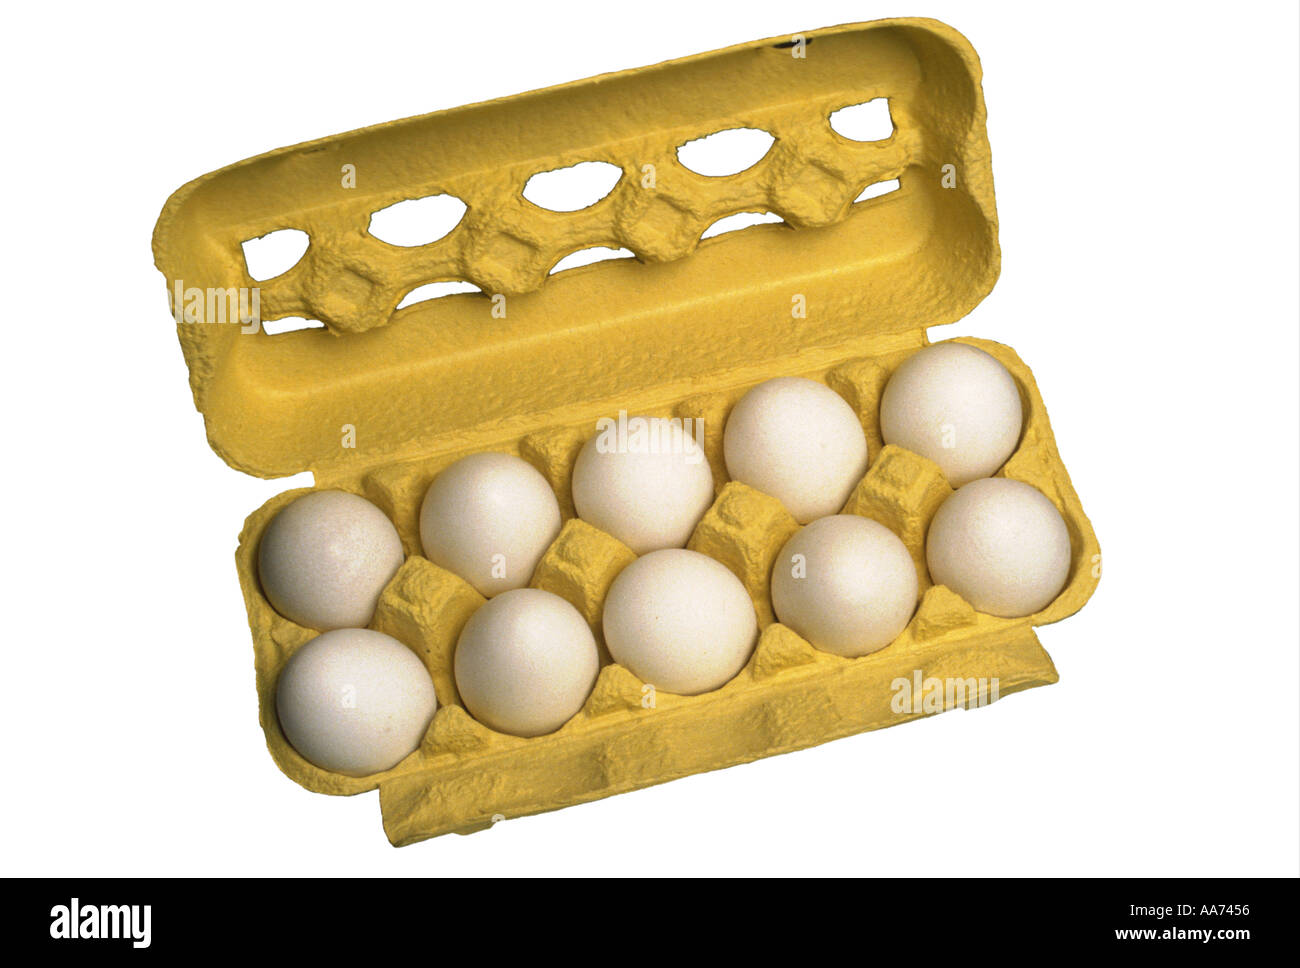 Dieci uova di gallina fresche s le uova in un pacchetto Foto Stock